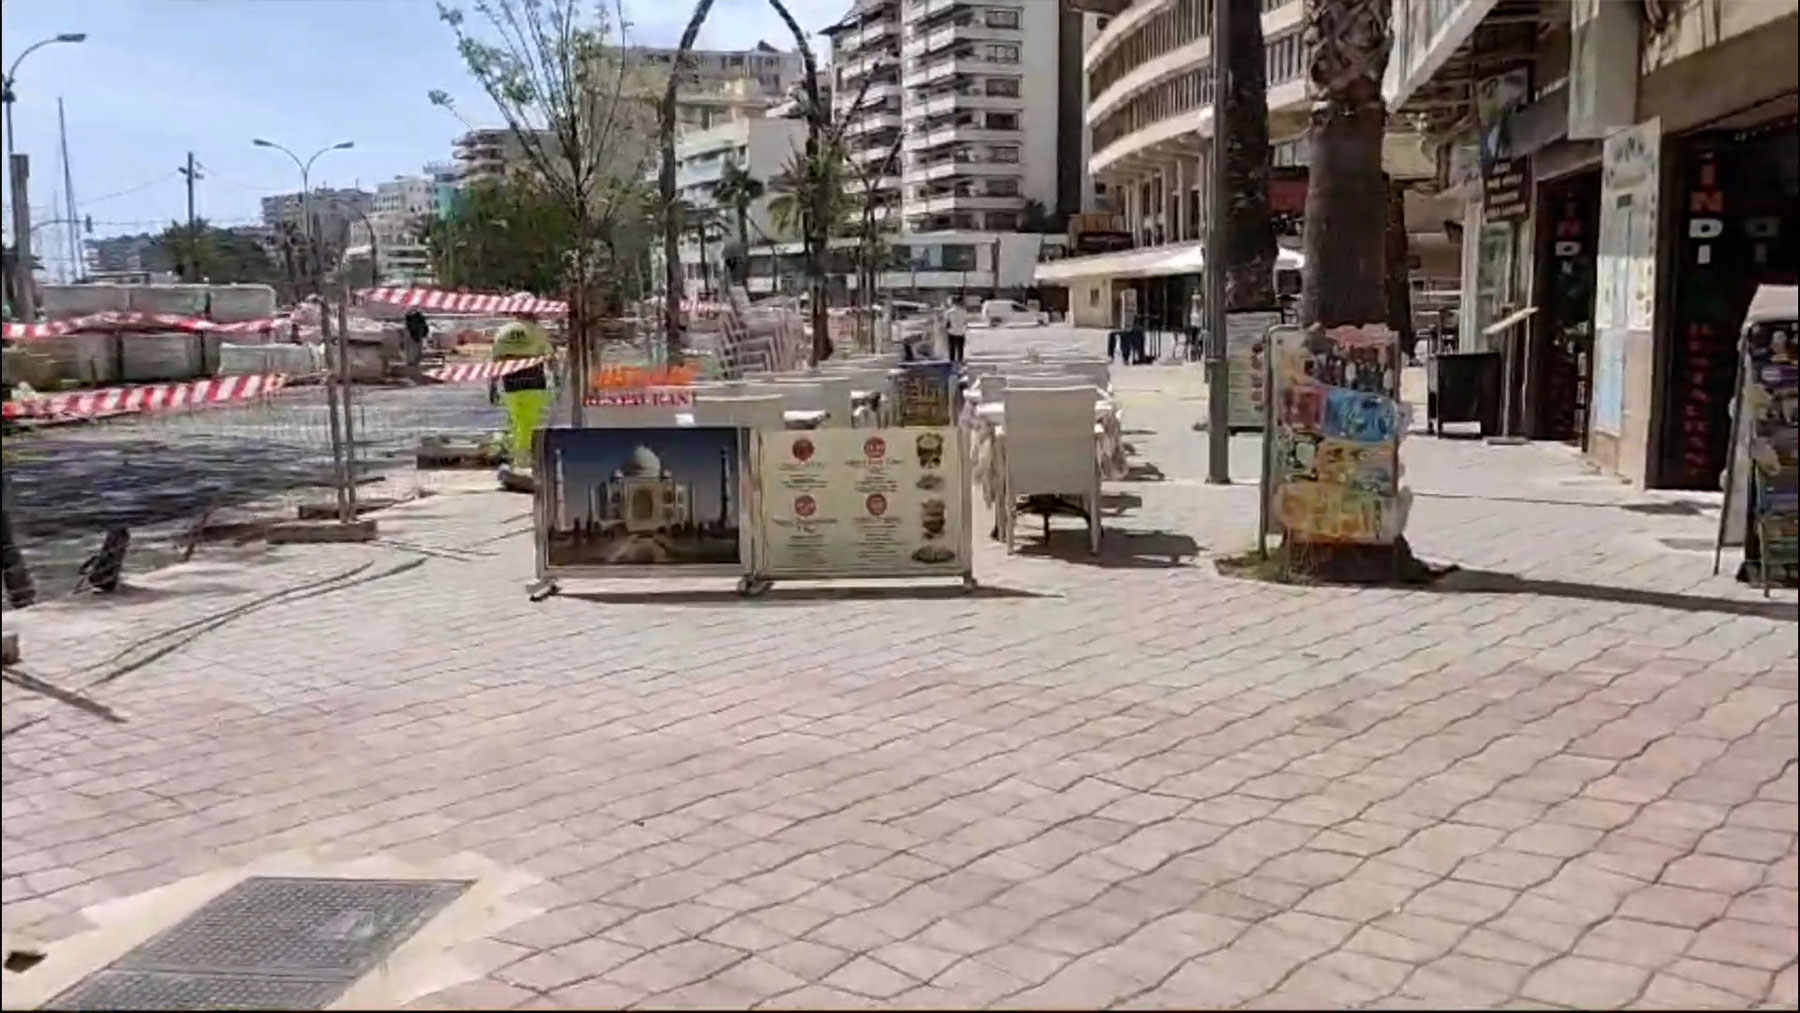 Las terrazas ya se despliegan en el Paseo Marítimo de Palma tras más un año de obras y ruina.